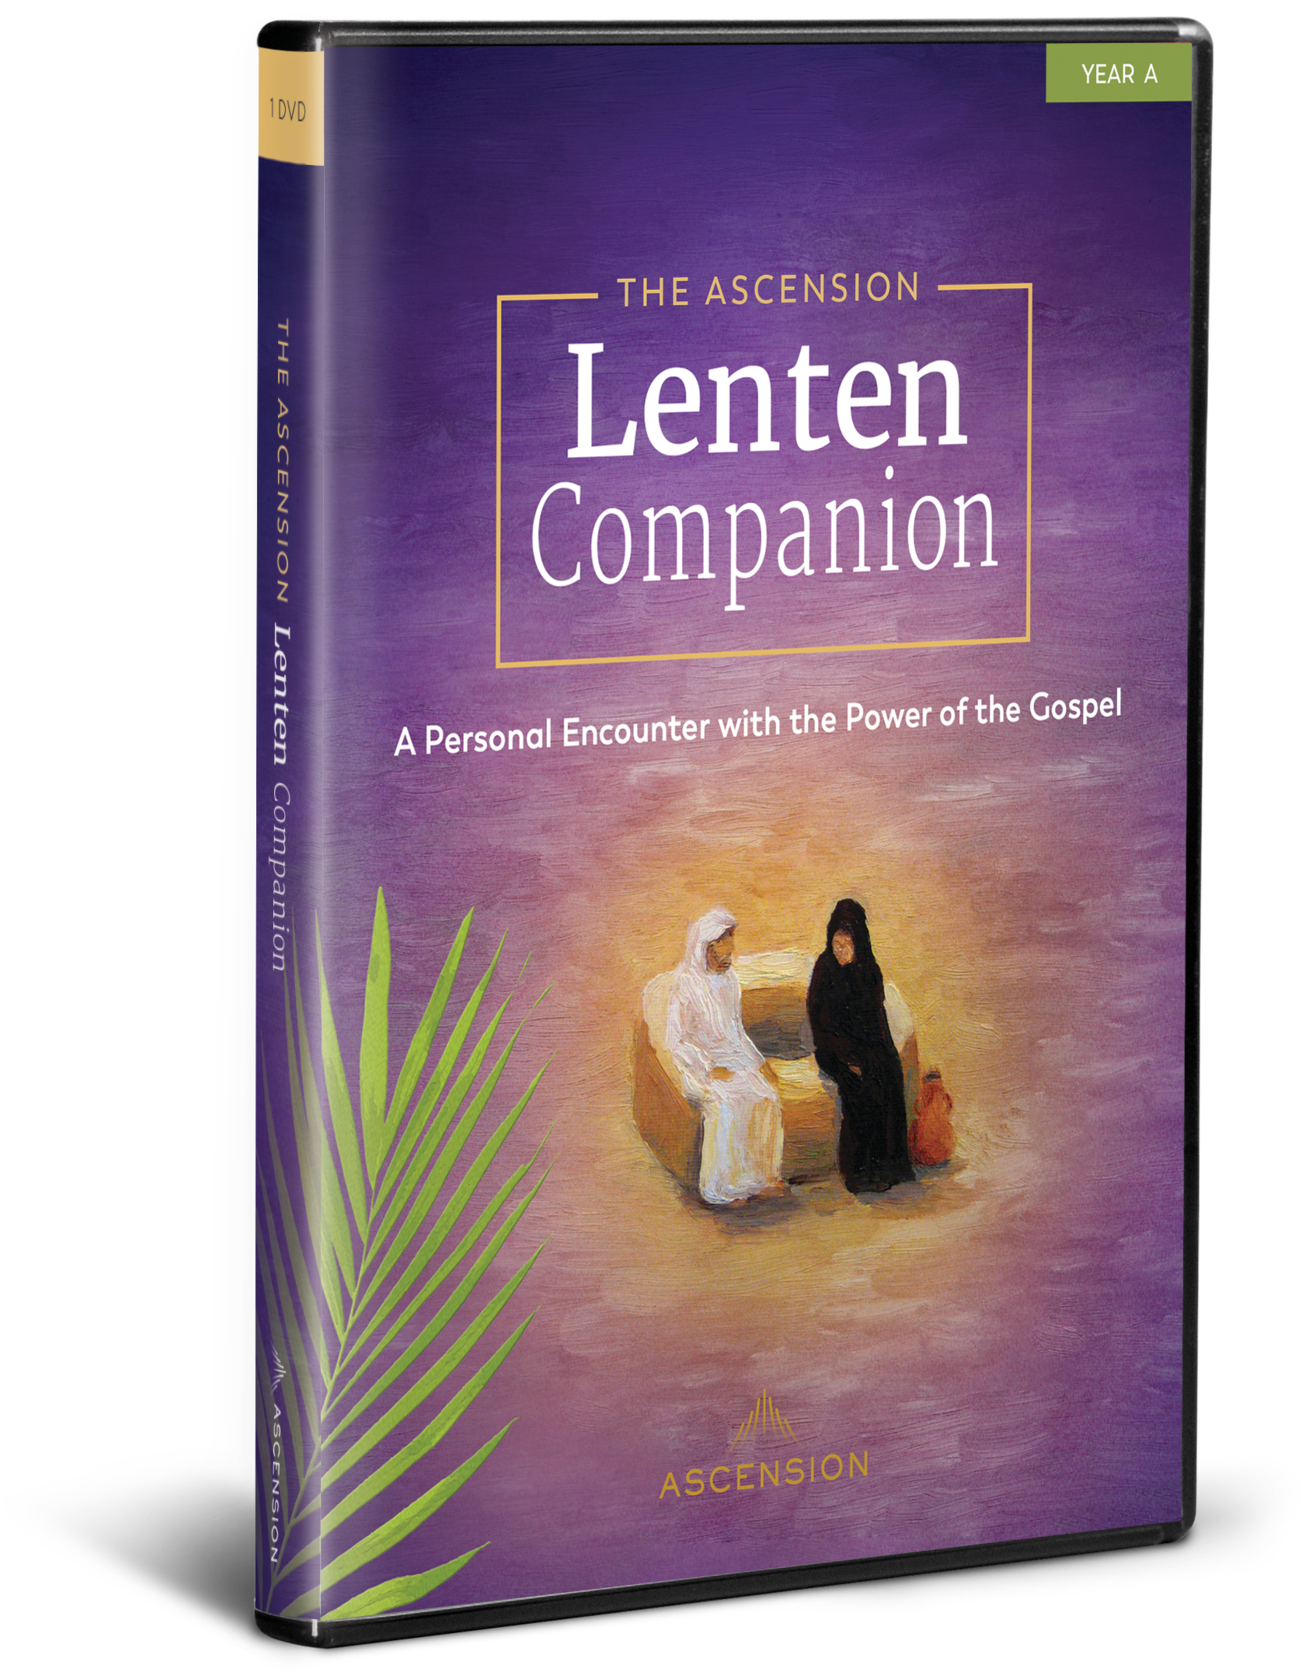 Lenten Companion D V D Cover PNG